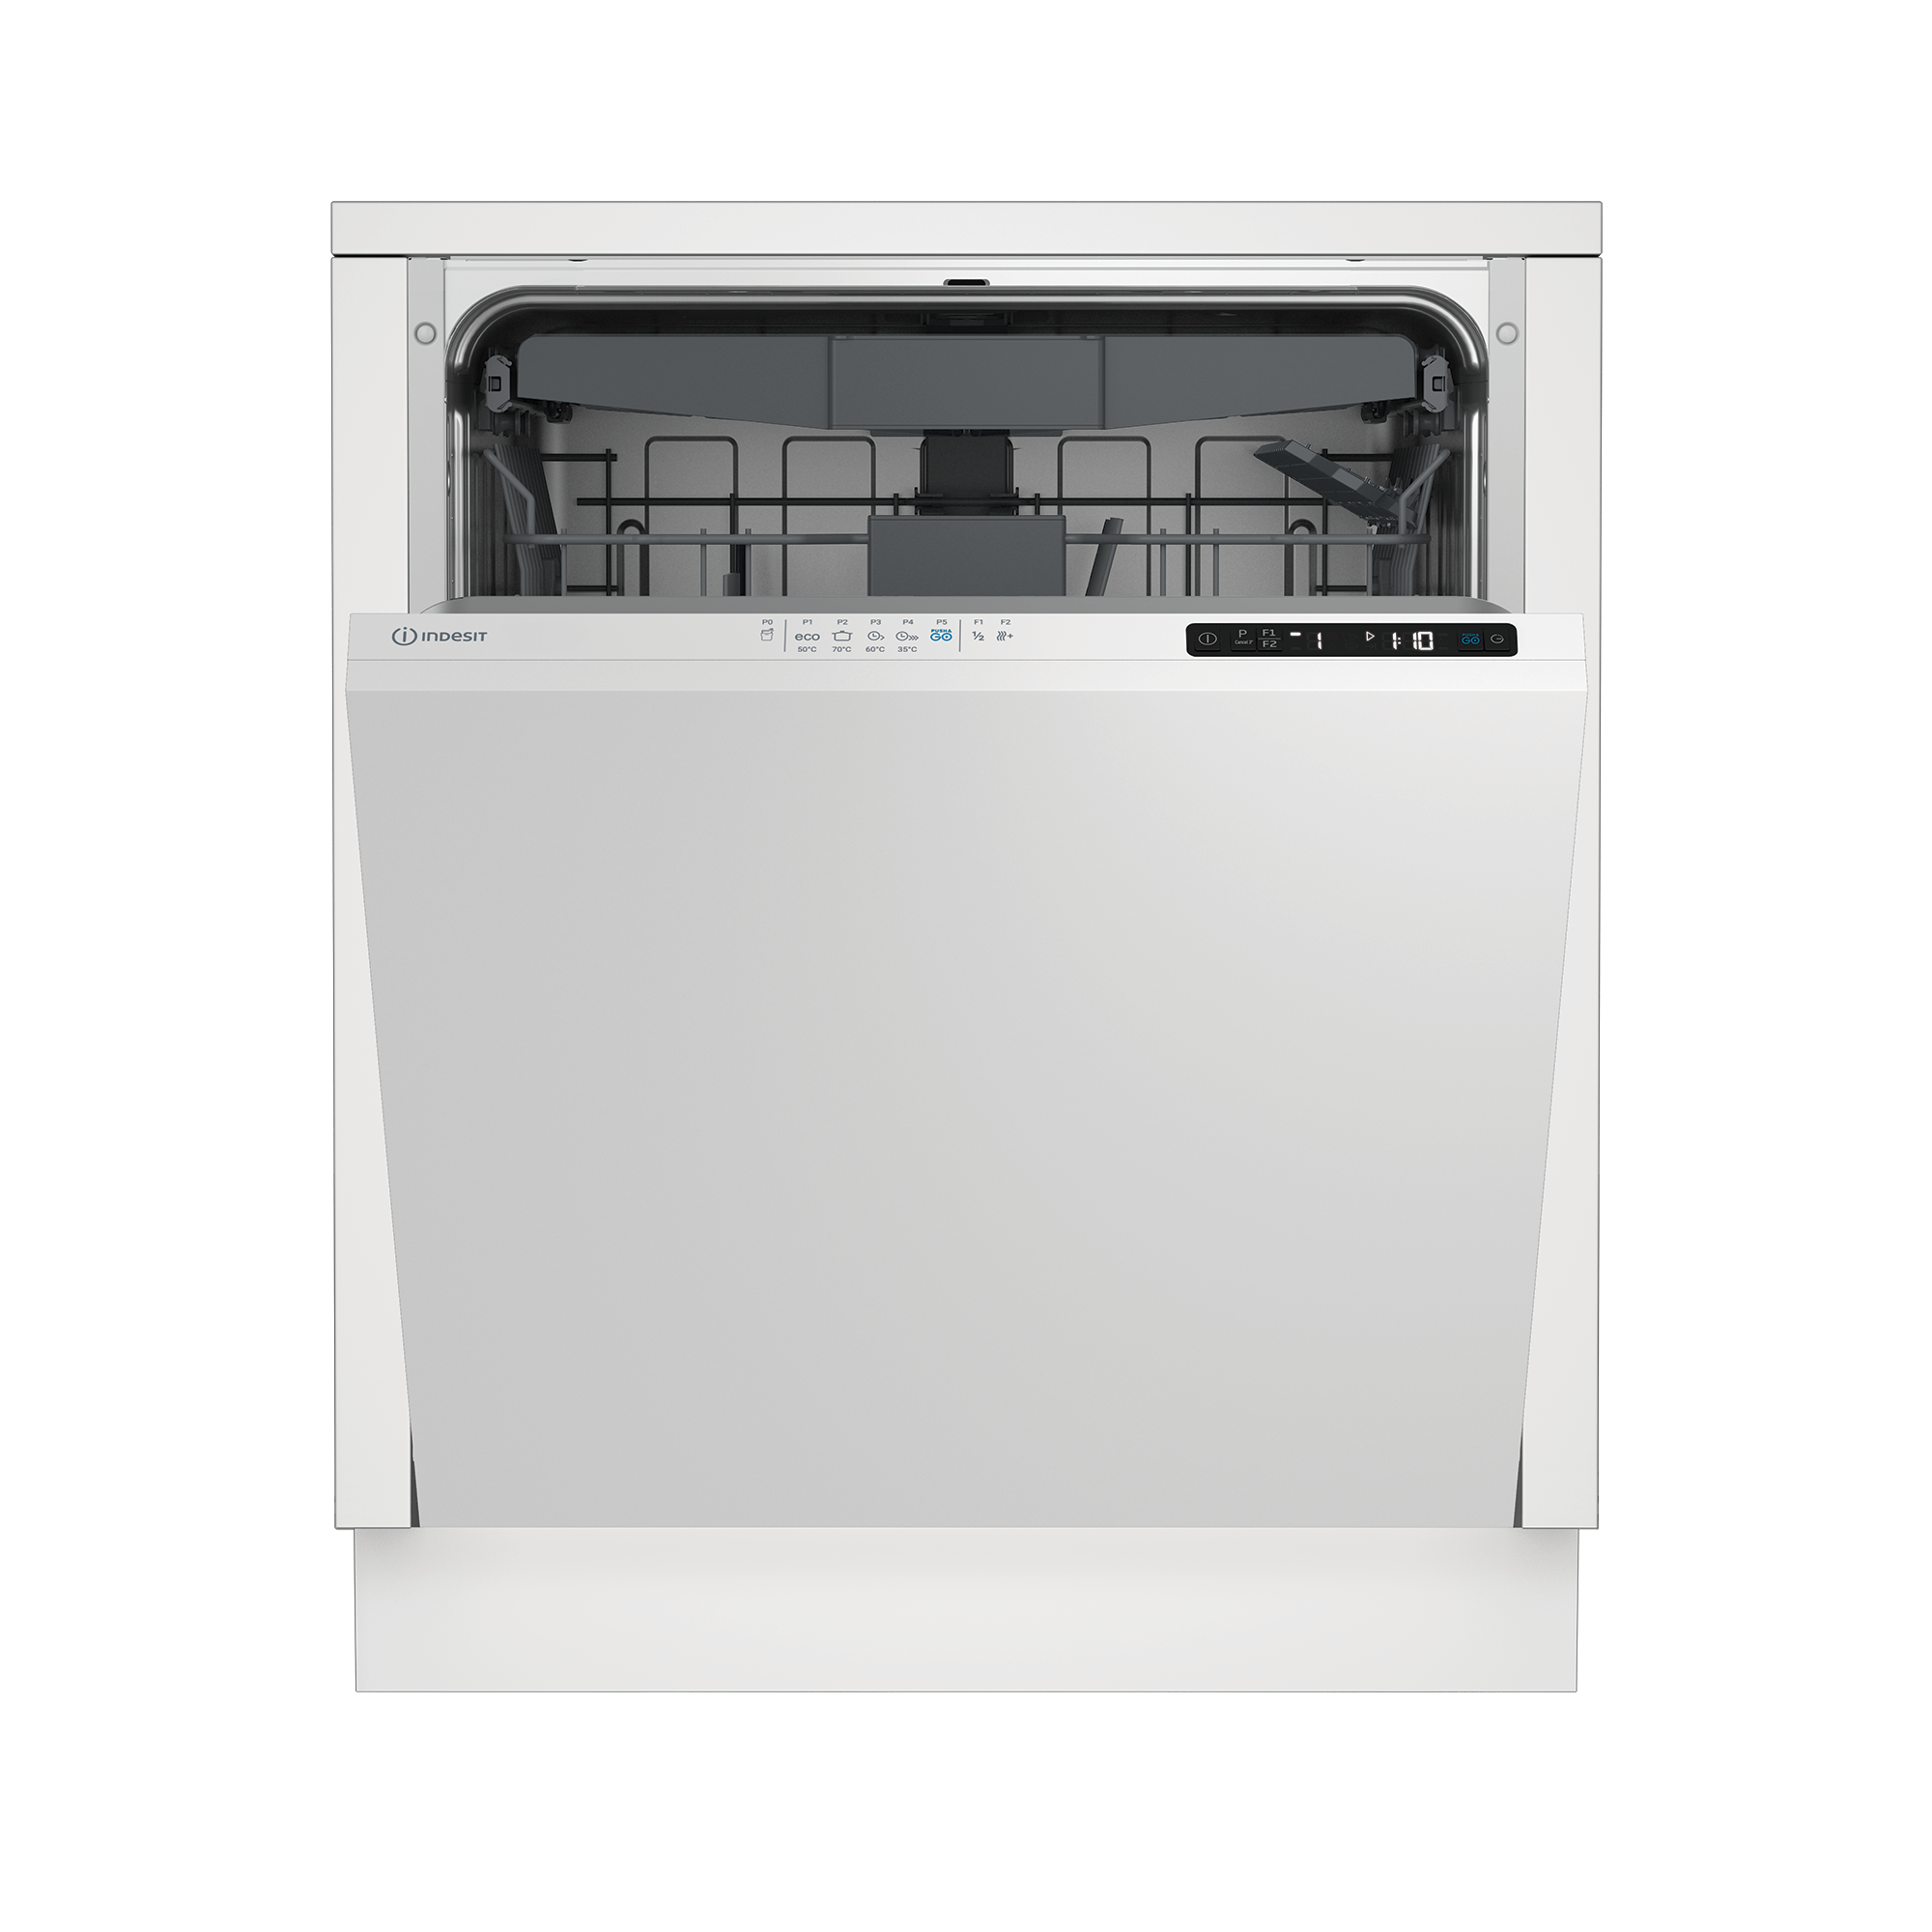 Встраиваемая посудомоечная машина Indesit DI 5C59 рис.1